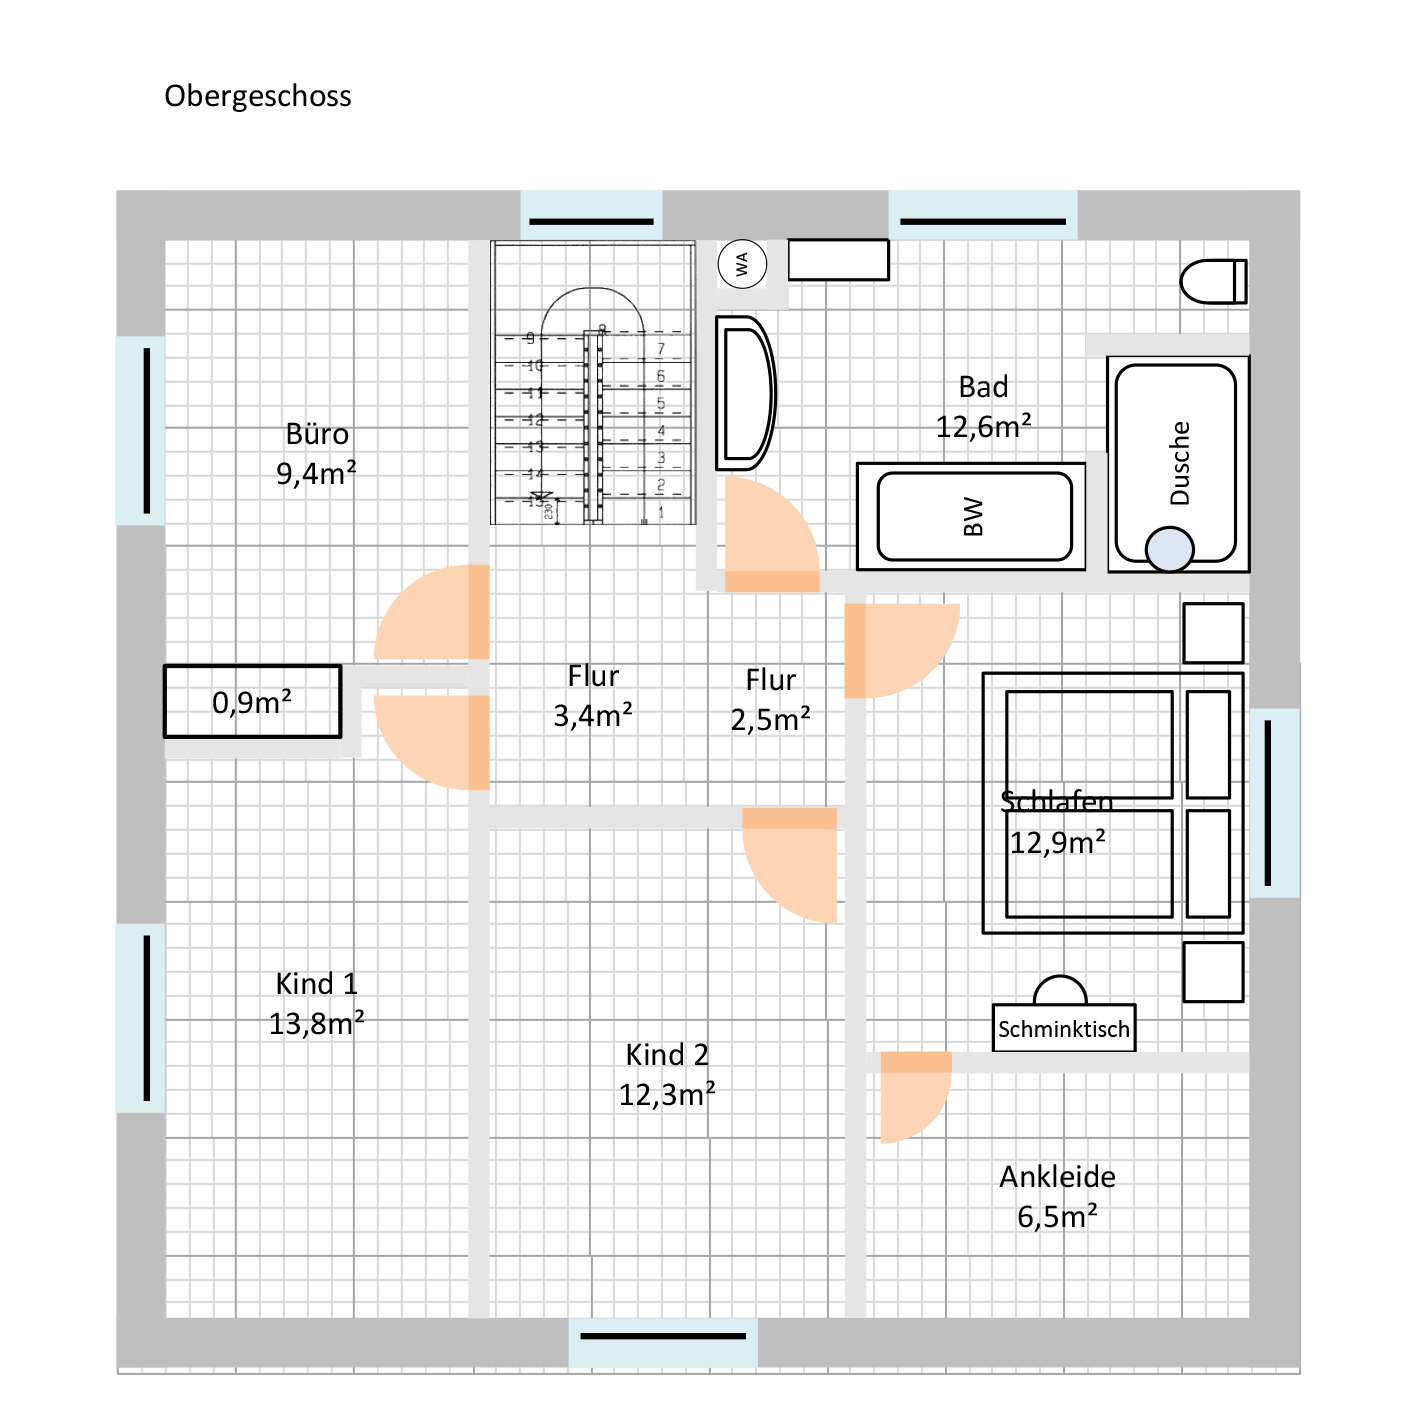 einfaches-einfamilienhaus-hofft-auf-tipps-zur-optimierung-222015-2.jpg